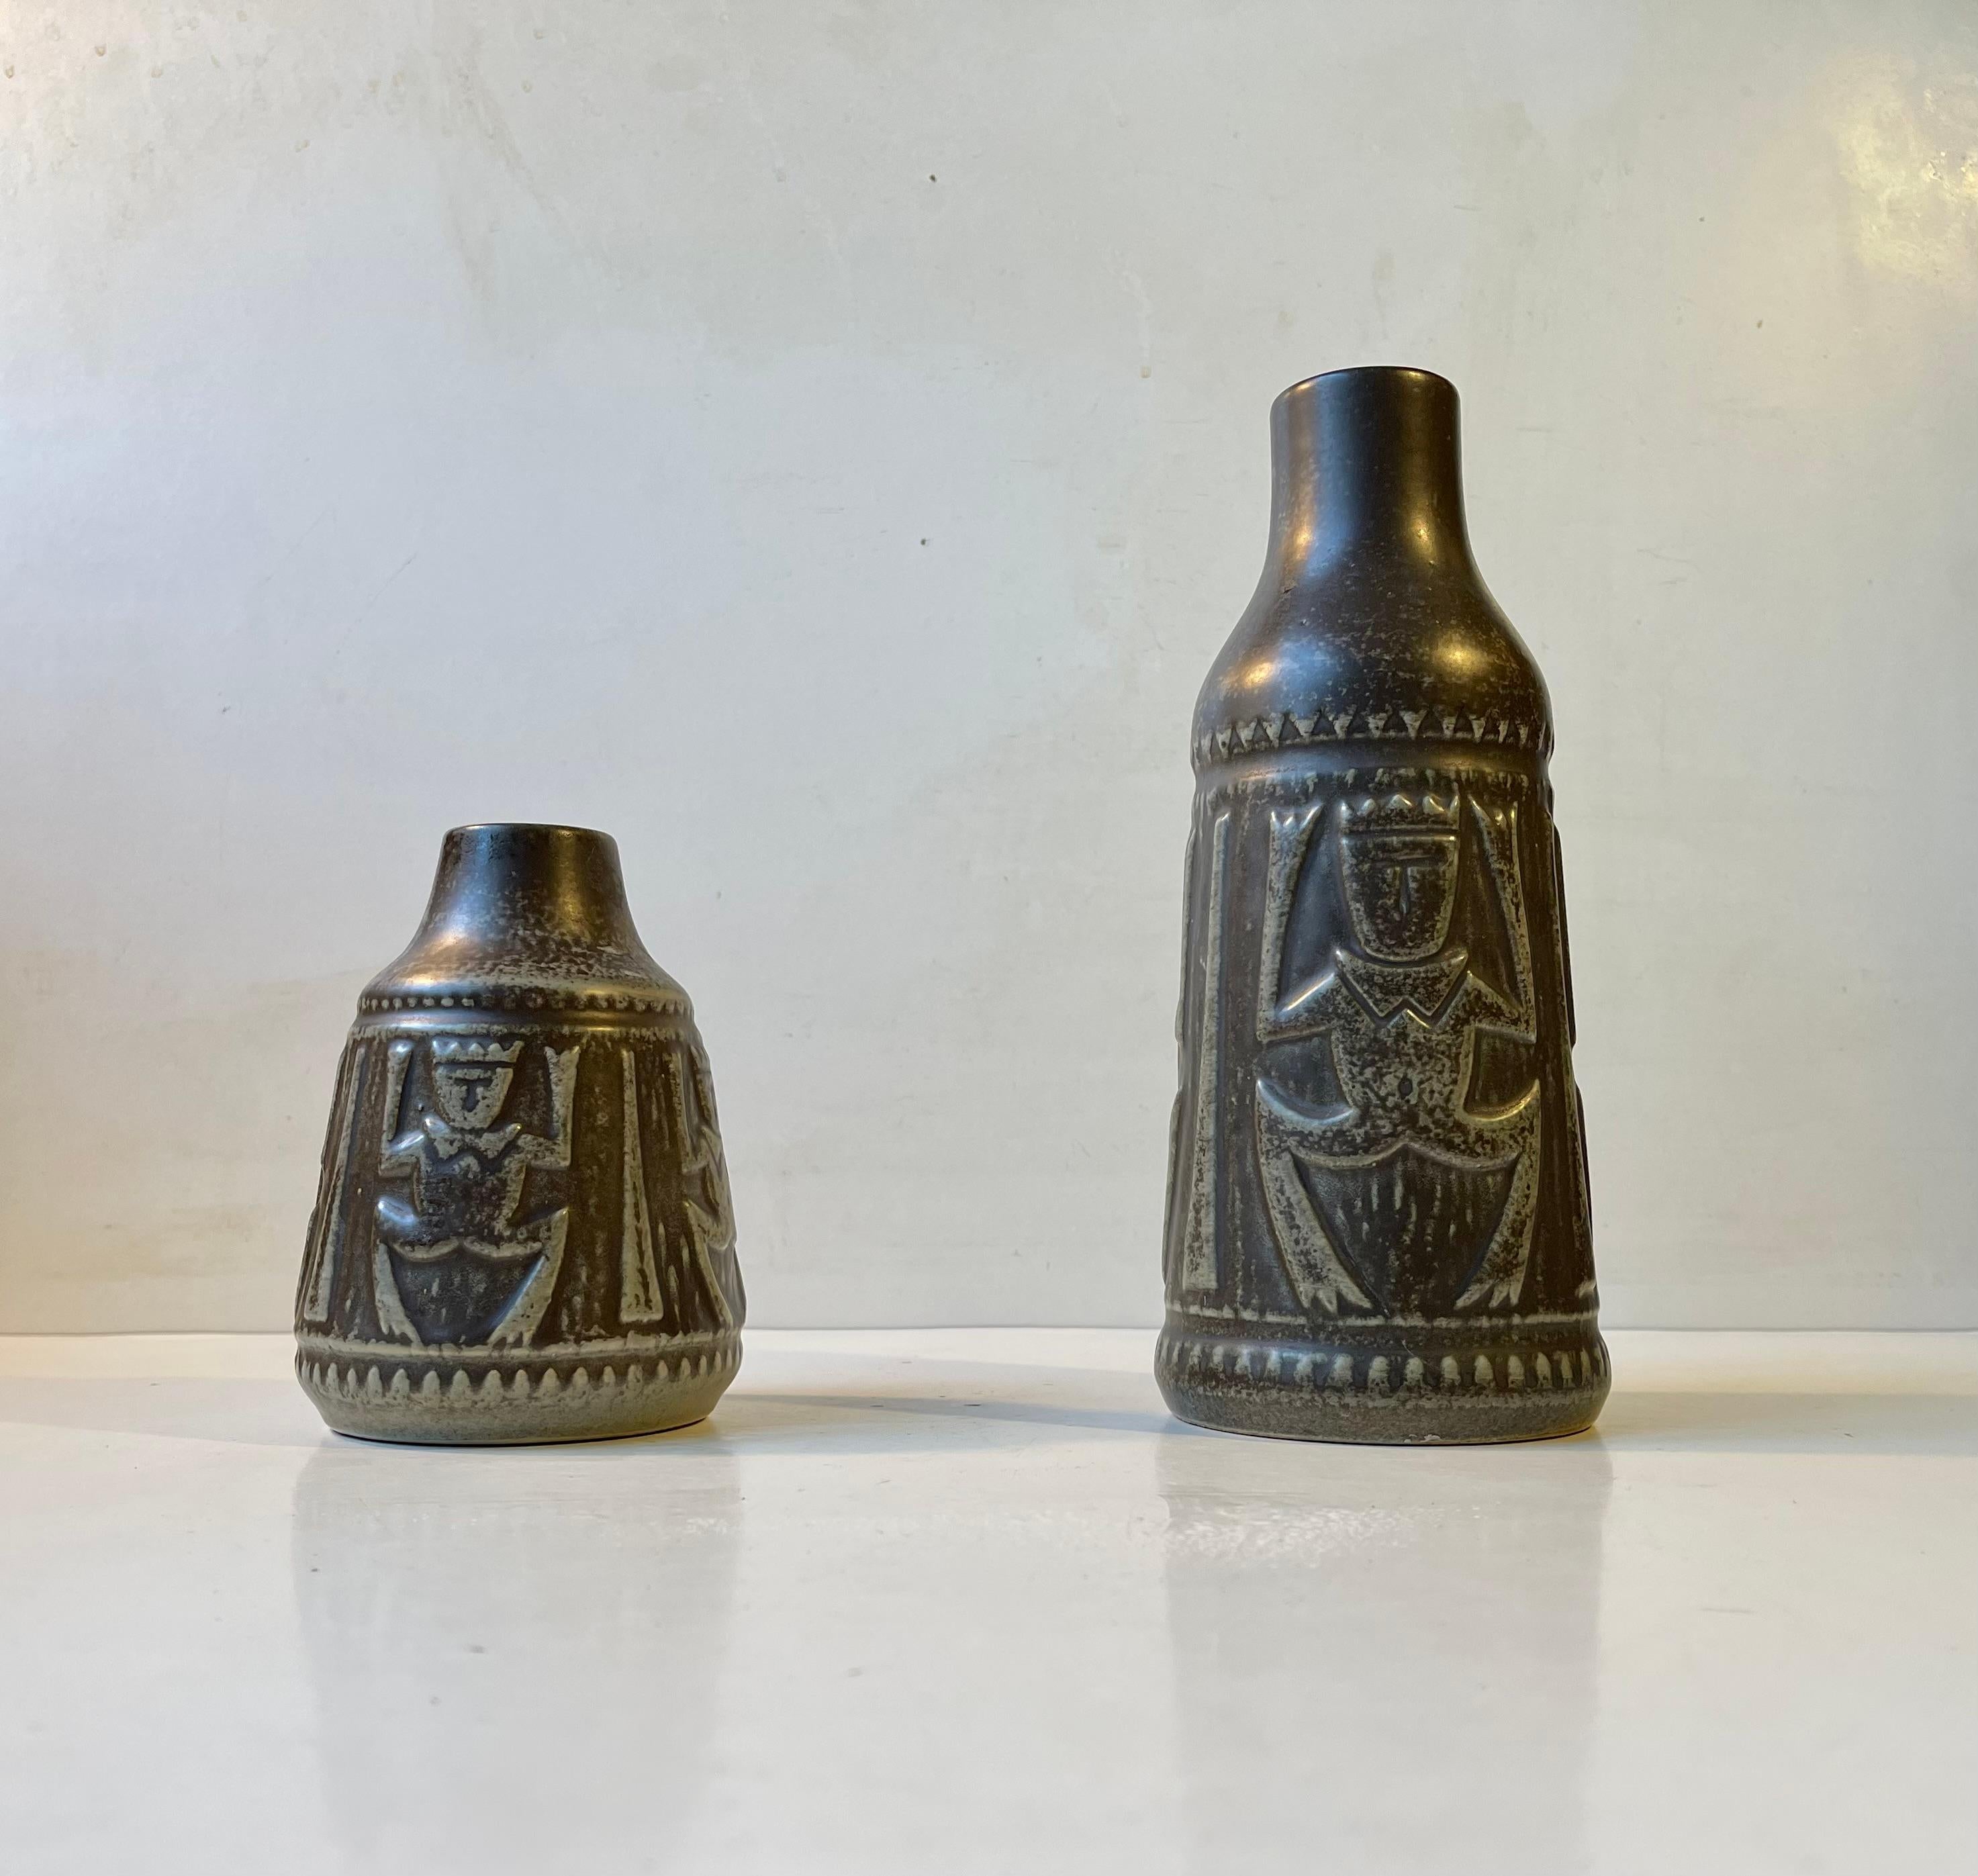 Glazed Danish Modern Ceramic Troll Vases by Johannes Pedersen & Gustav Ottesen, 1970s For Sale